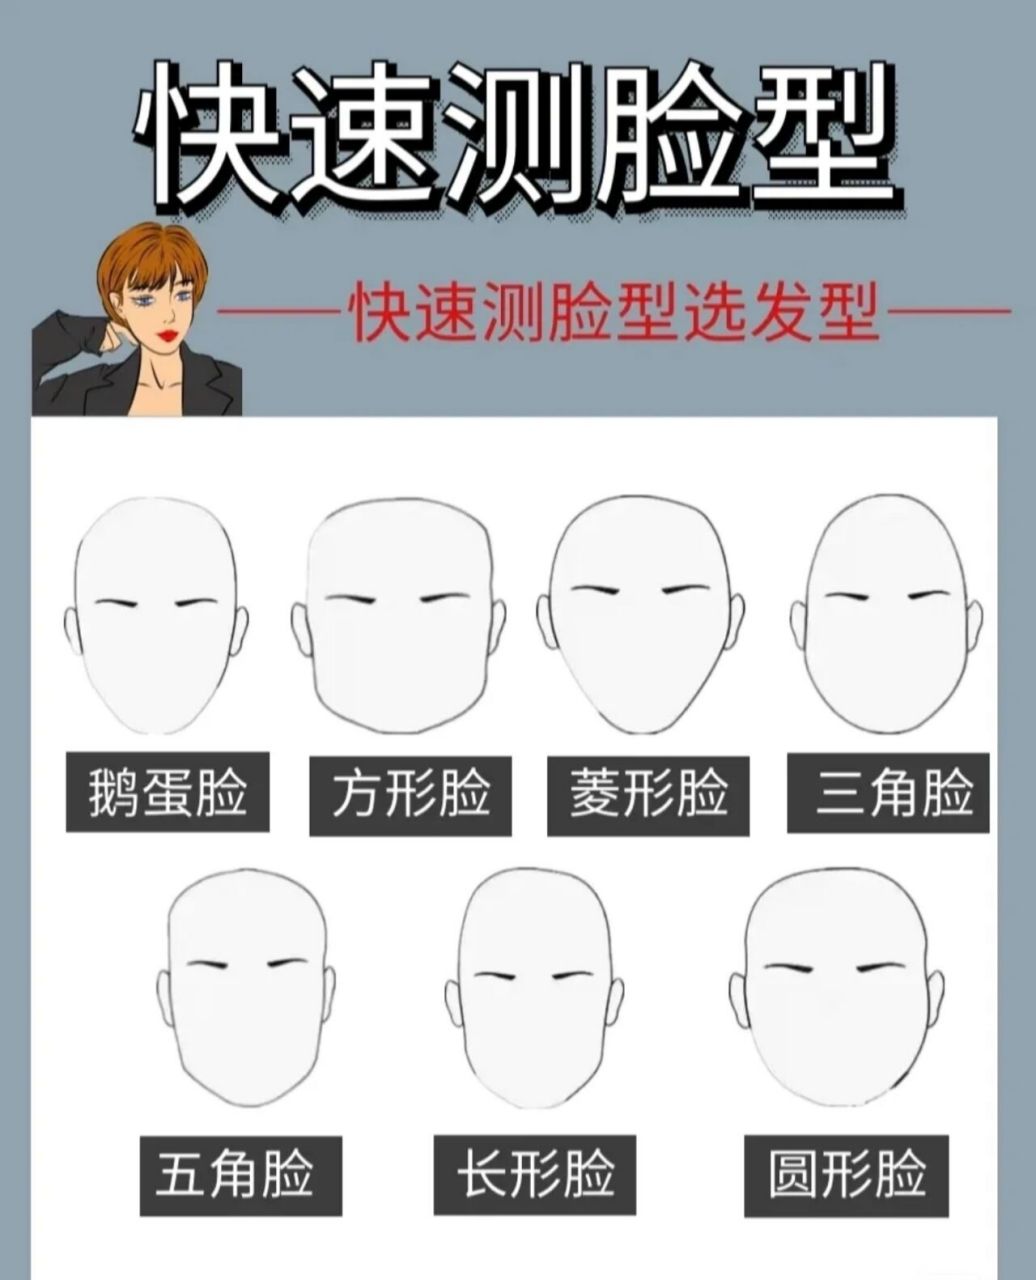 发型测试上传脸型 app图片